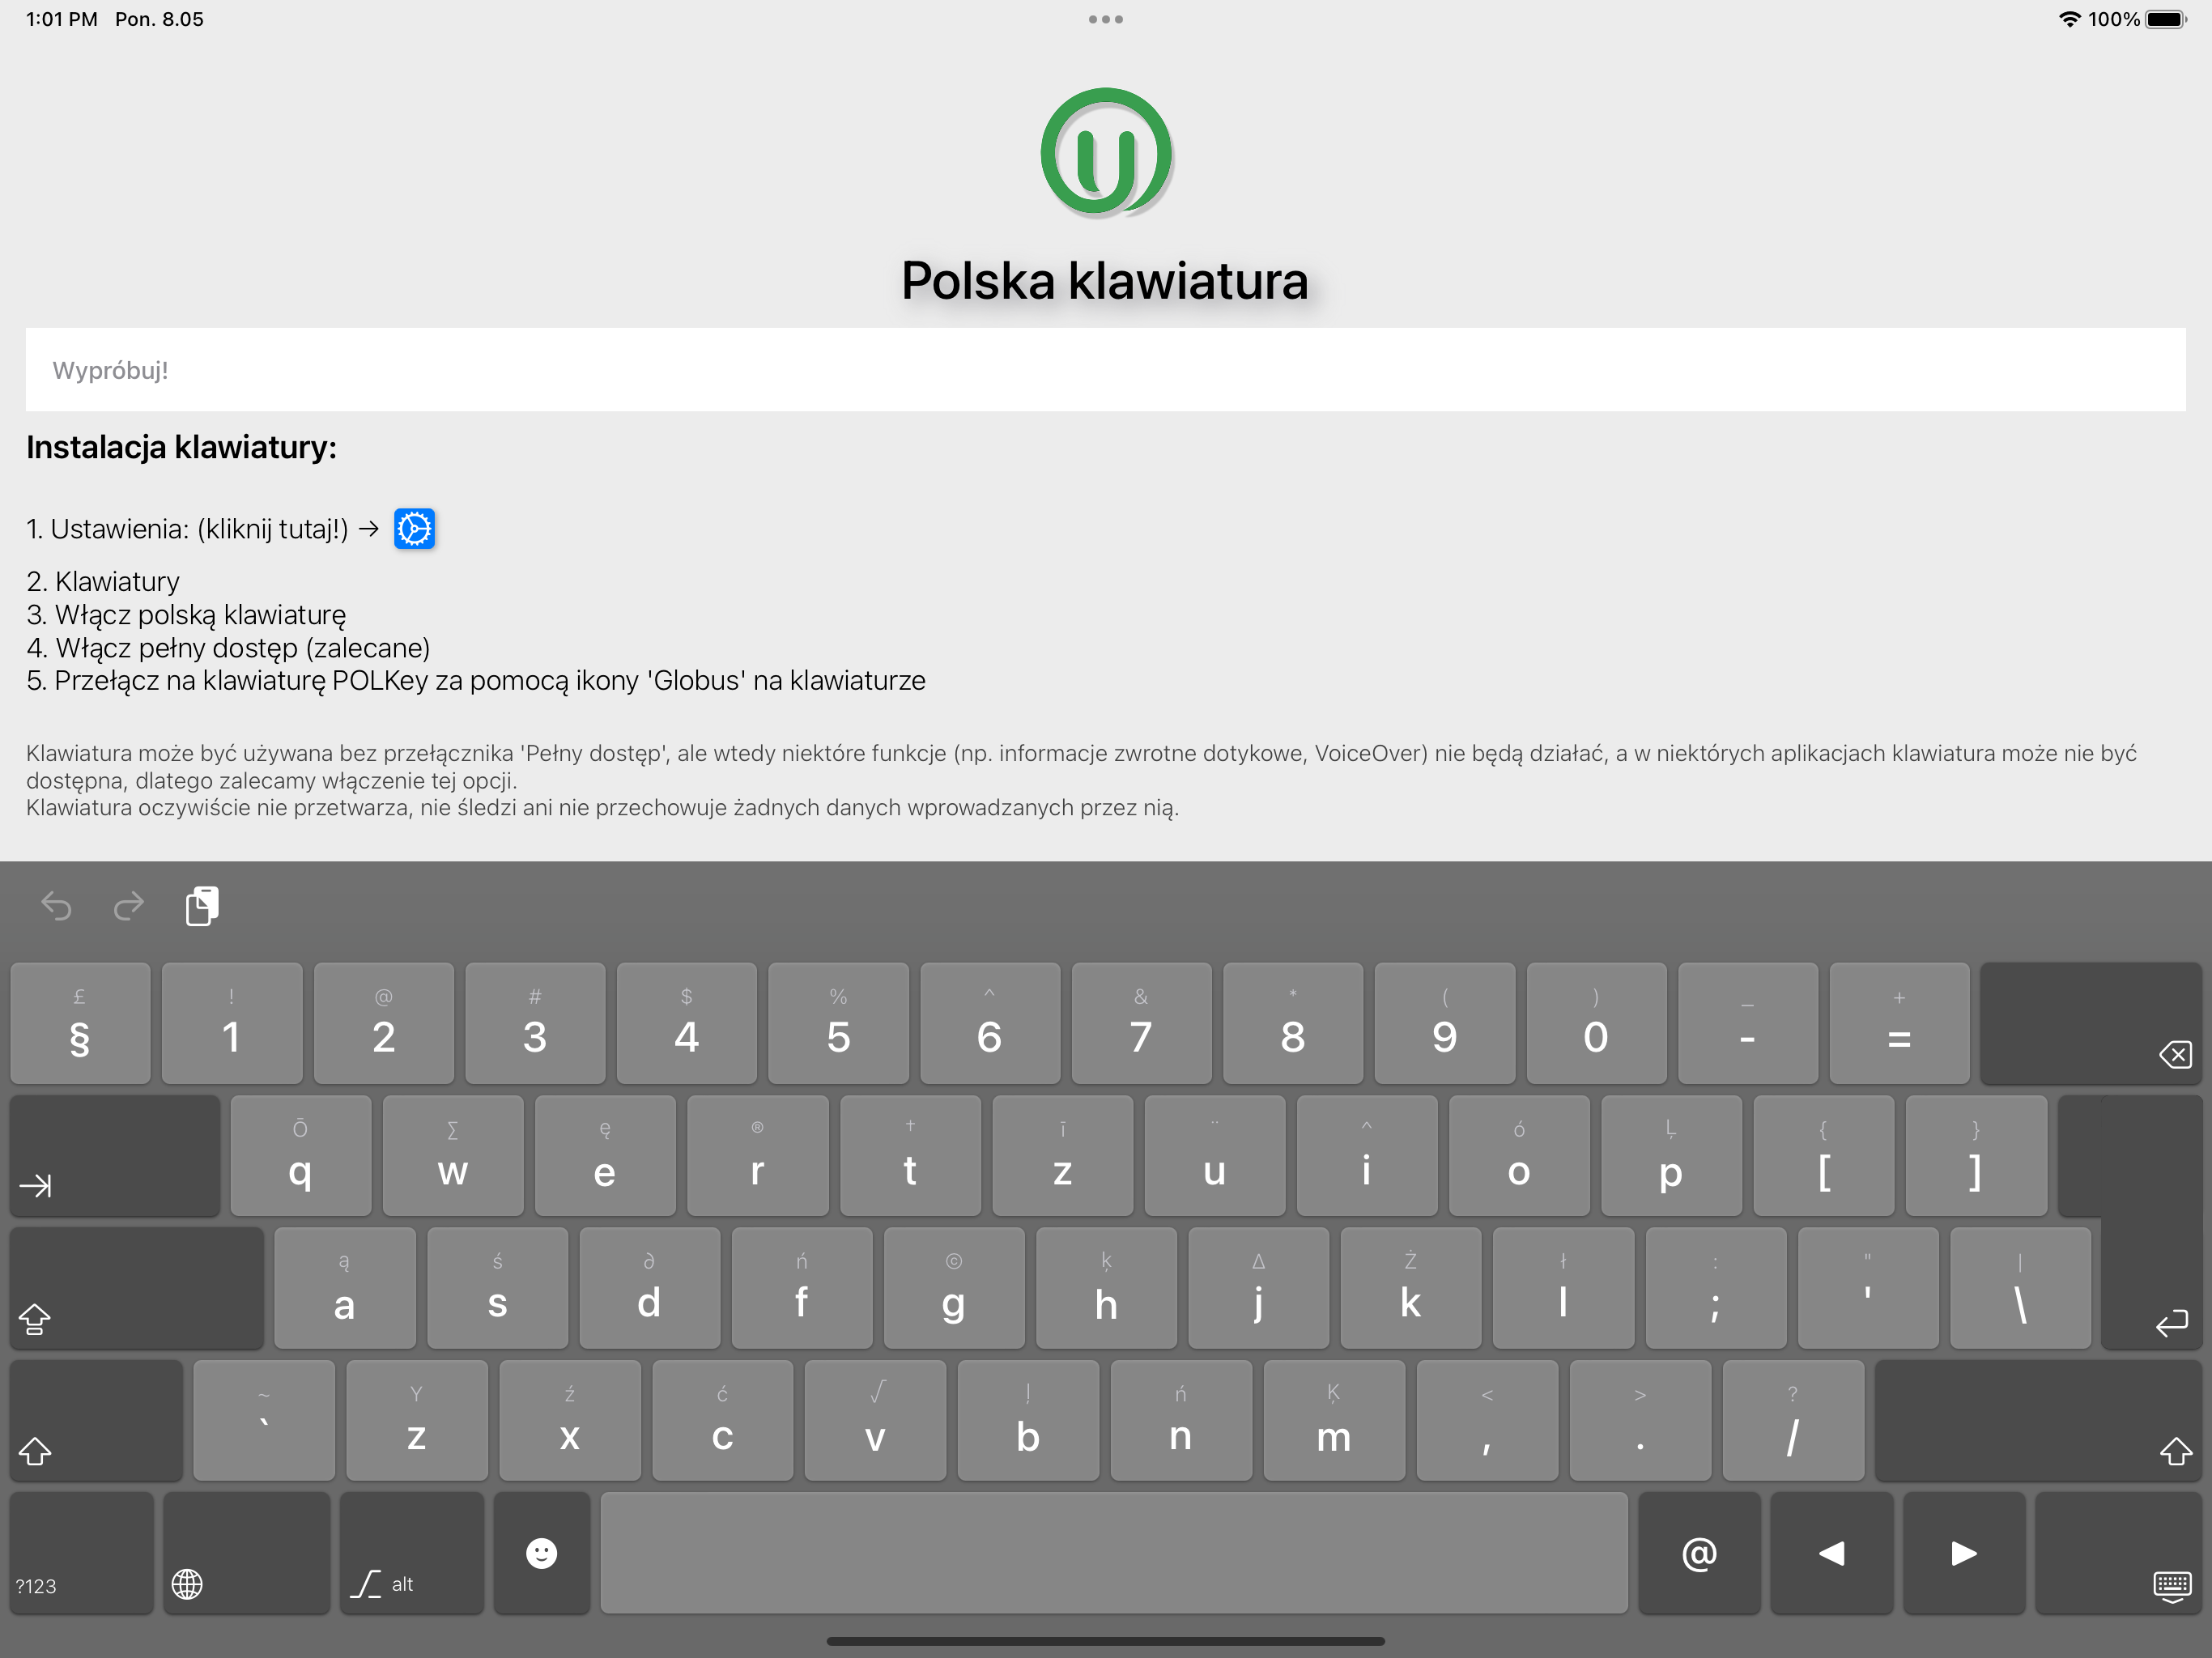 POLKey to polska klawiatura iOS | UniOffice